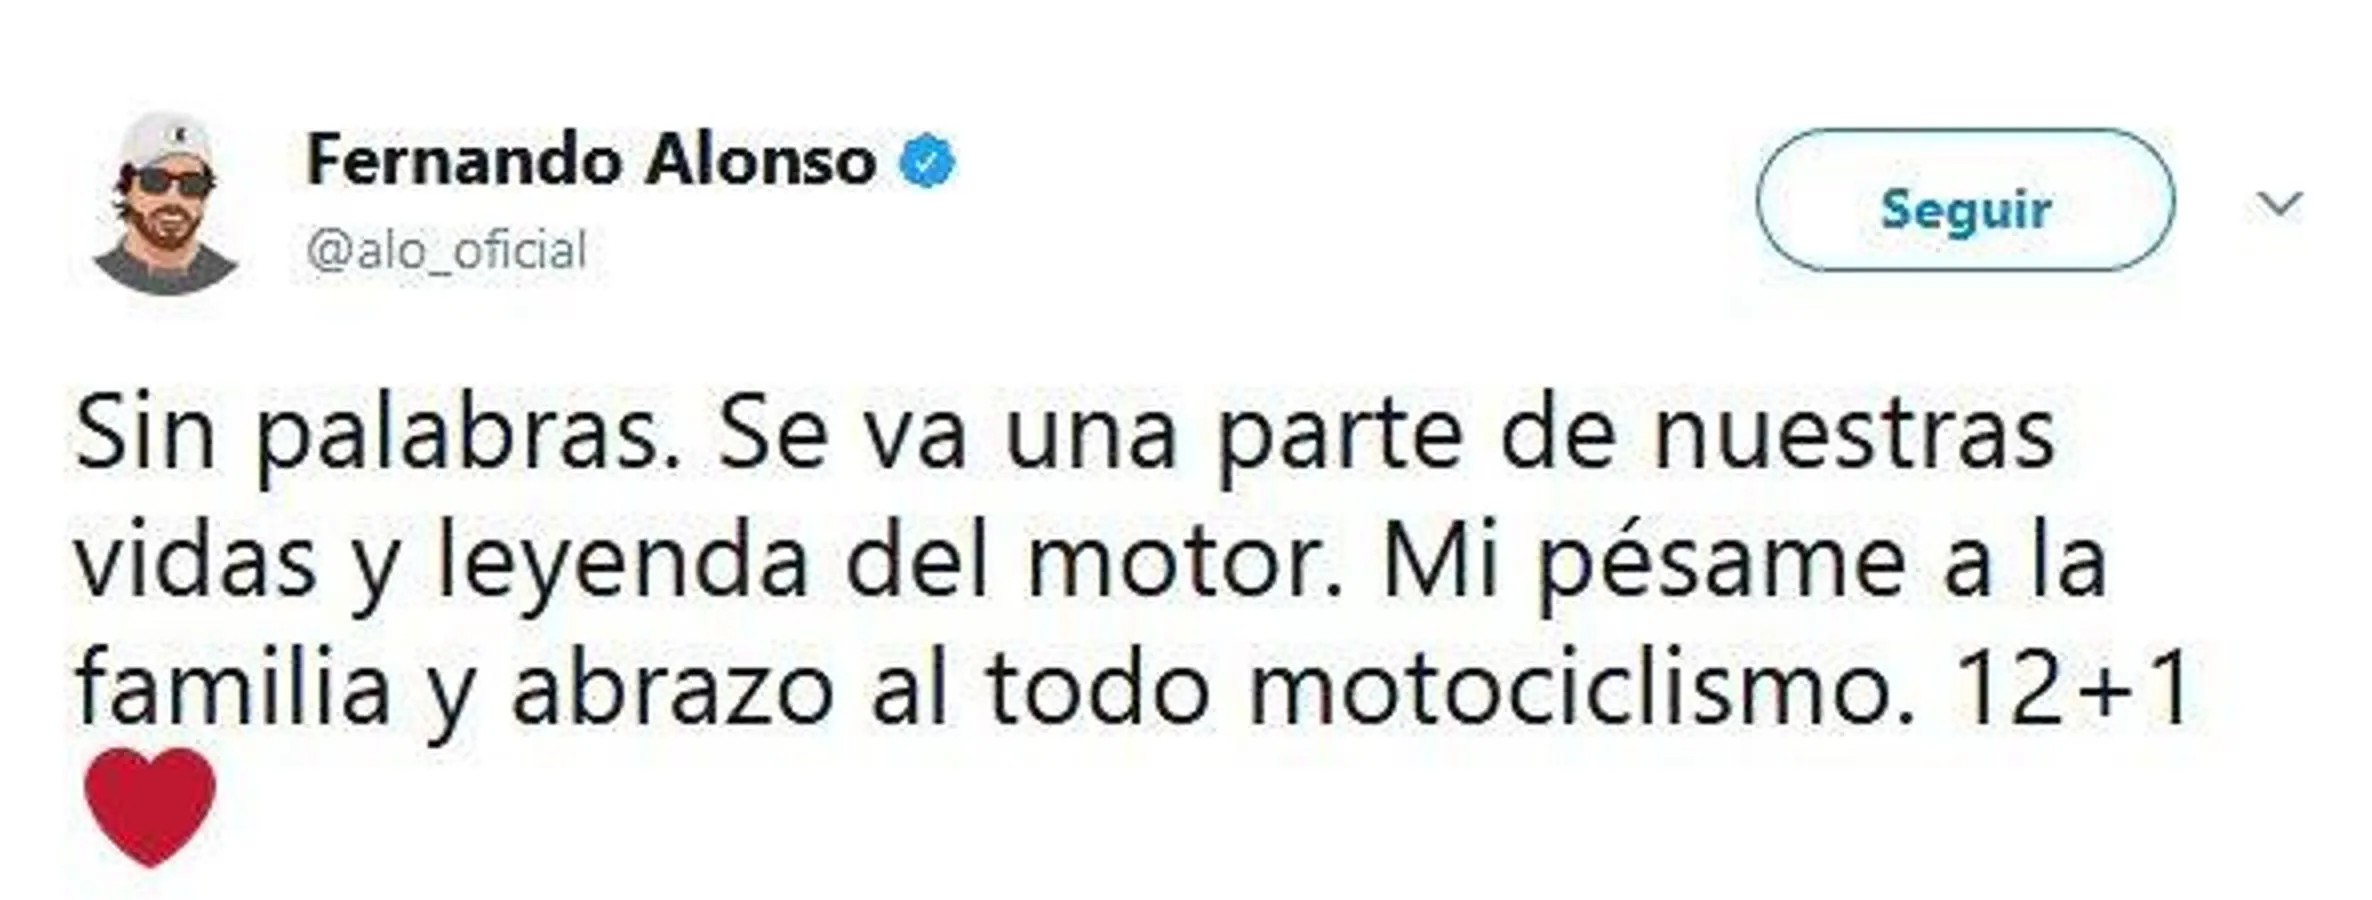 Fernando Alonso, piloto de automovilismo de velocidad. 